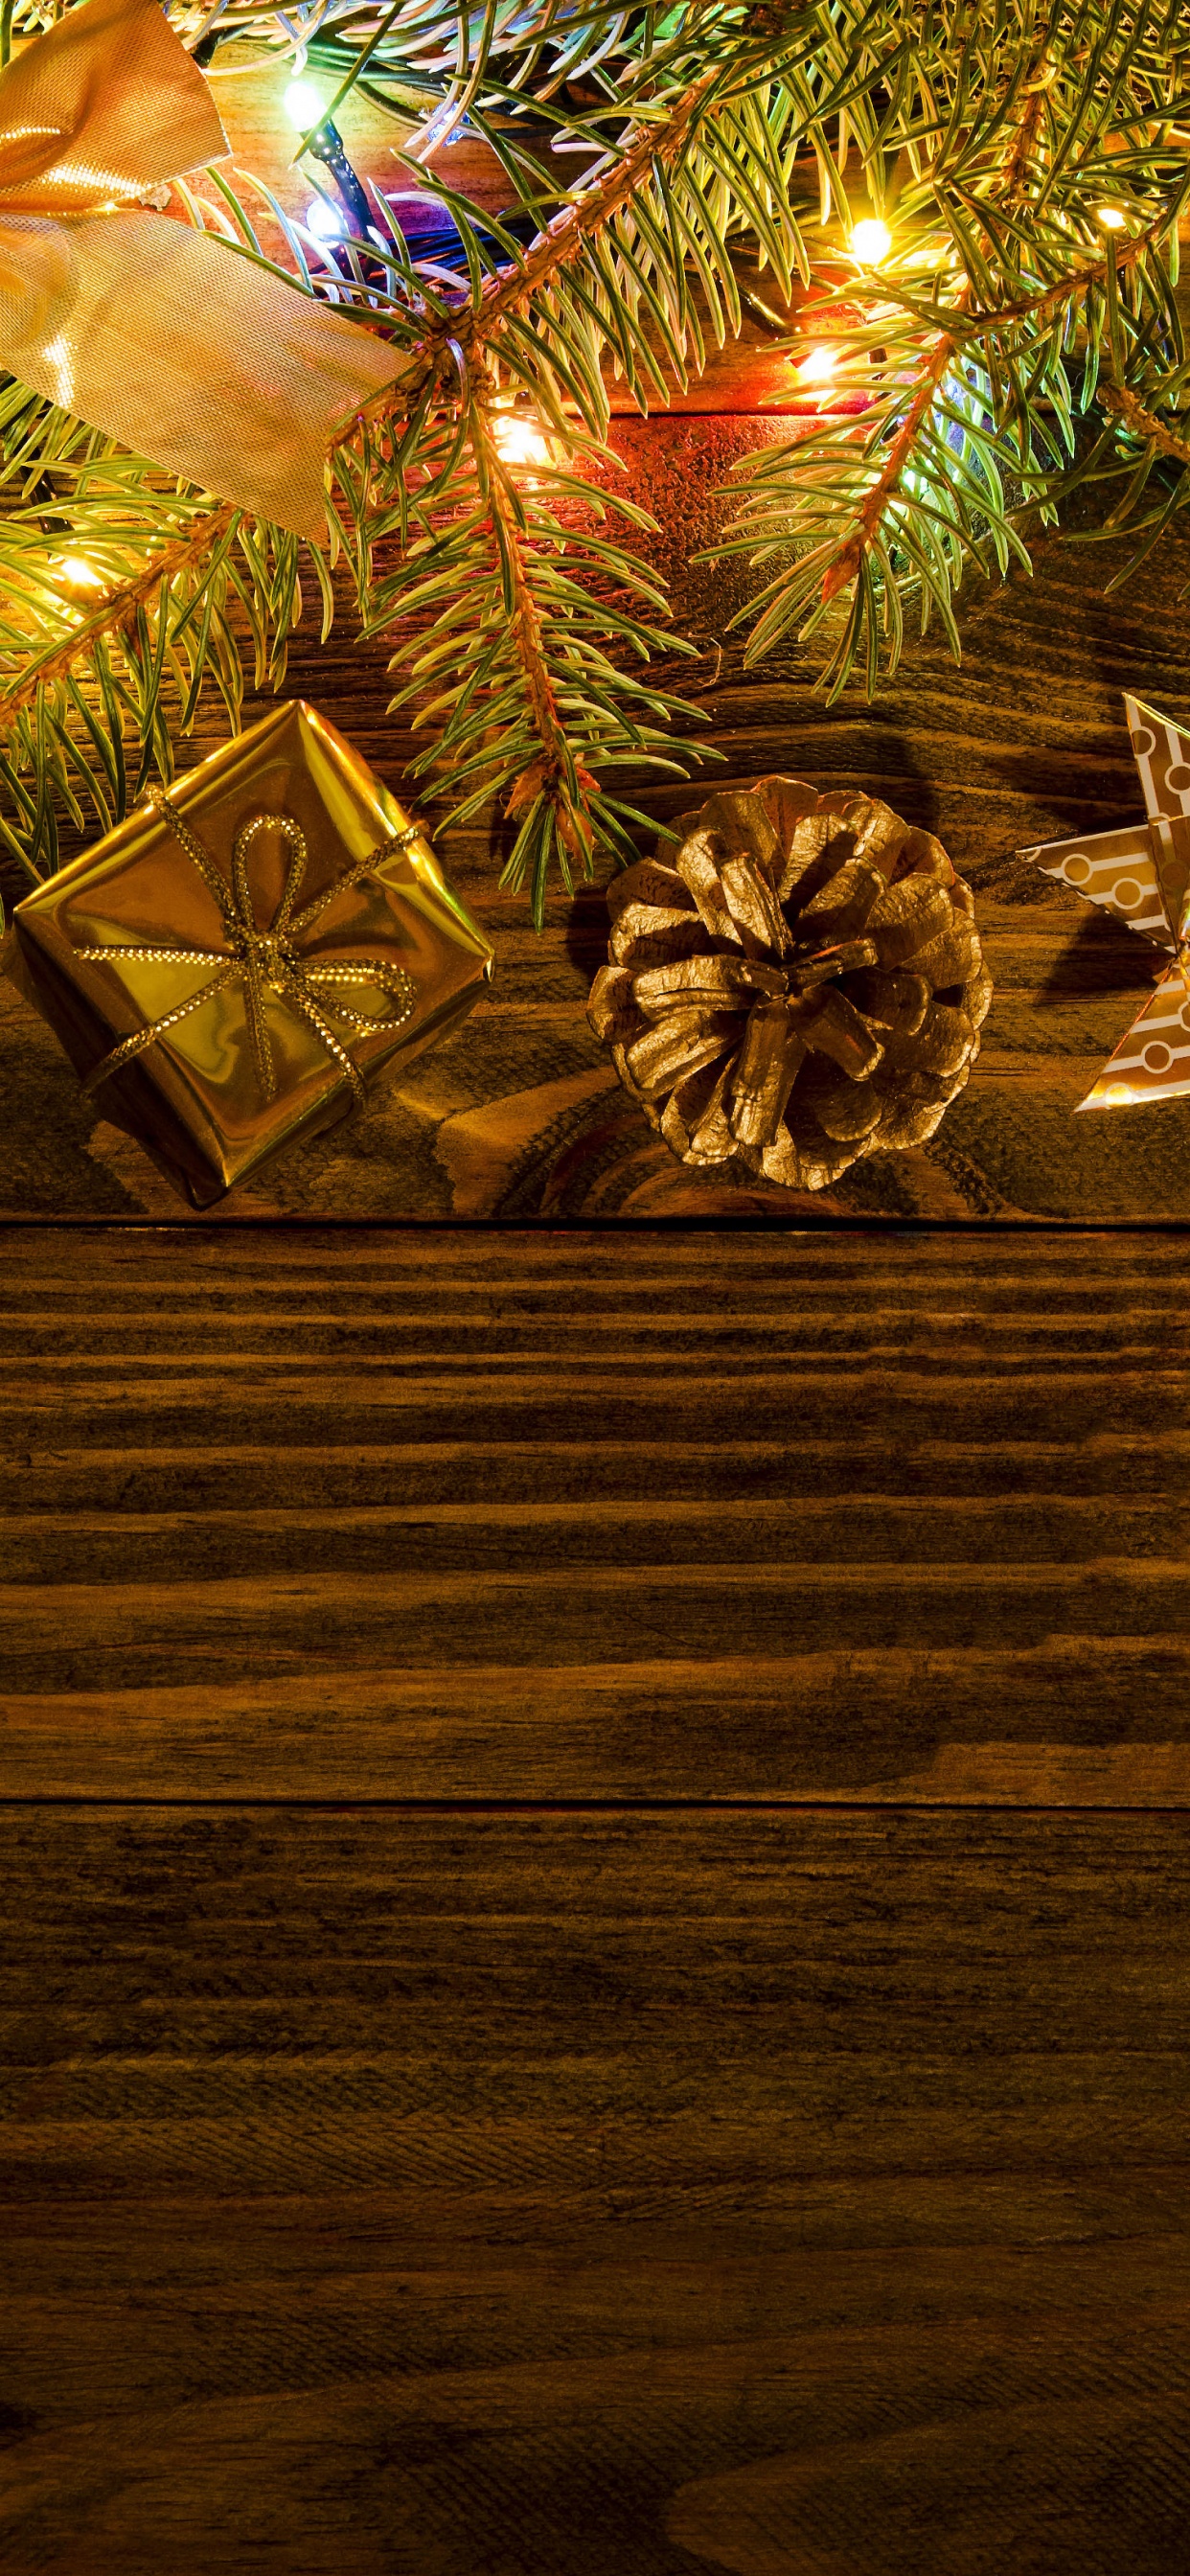 Neujahr, Weihnachten, Baum, Weihnachtsdekoration, Weihnachtsbeleuchtung. Wallpaper in 1242x2688 Resolution